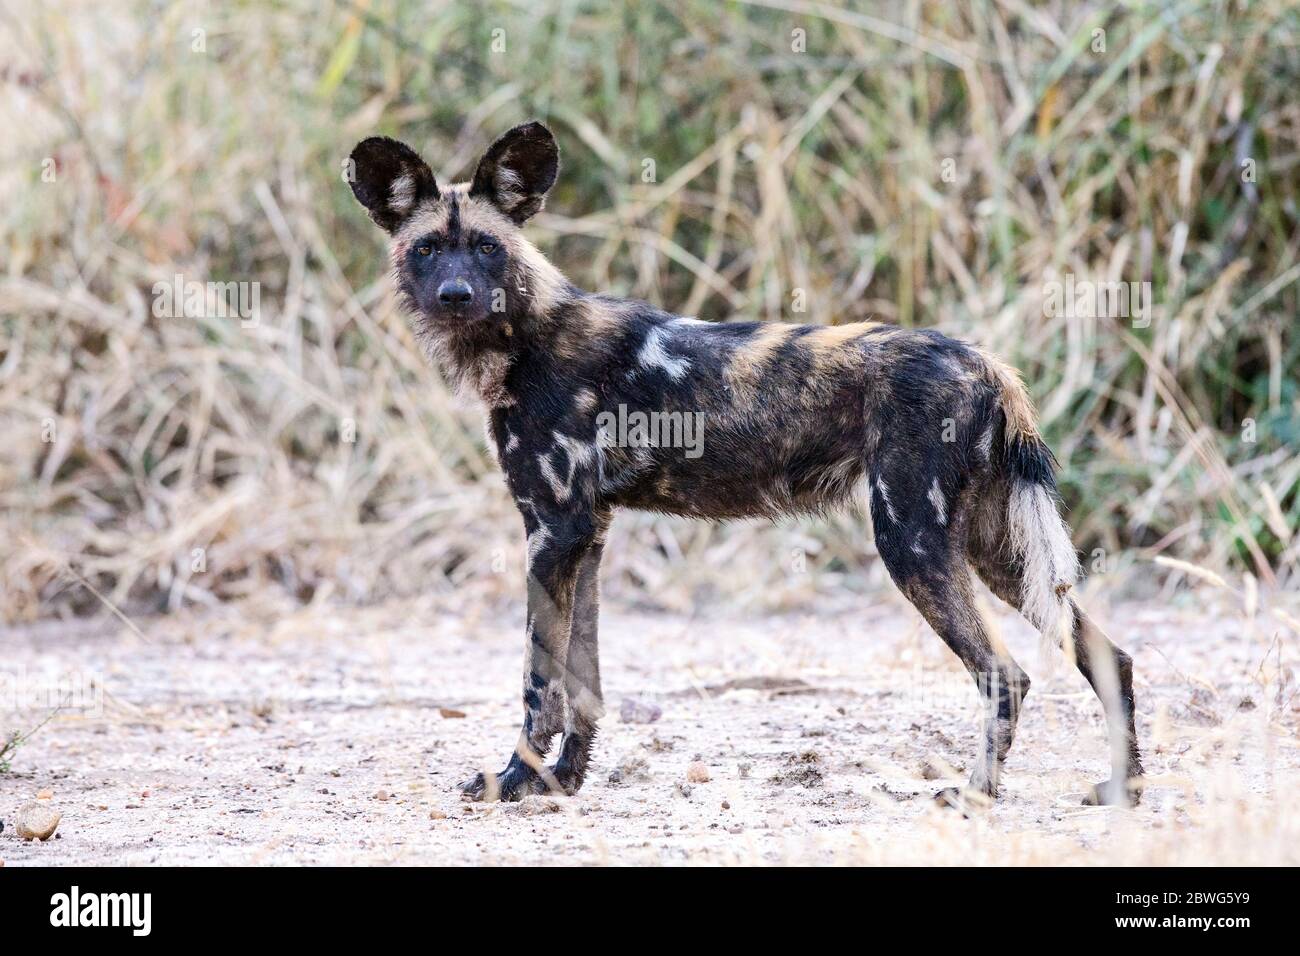 African wild dog (Lycaon pictus) looking at camera, Tarangire National Park, Tanzania, Africa Stock Photo